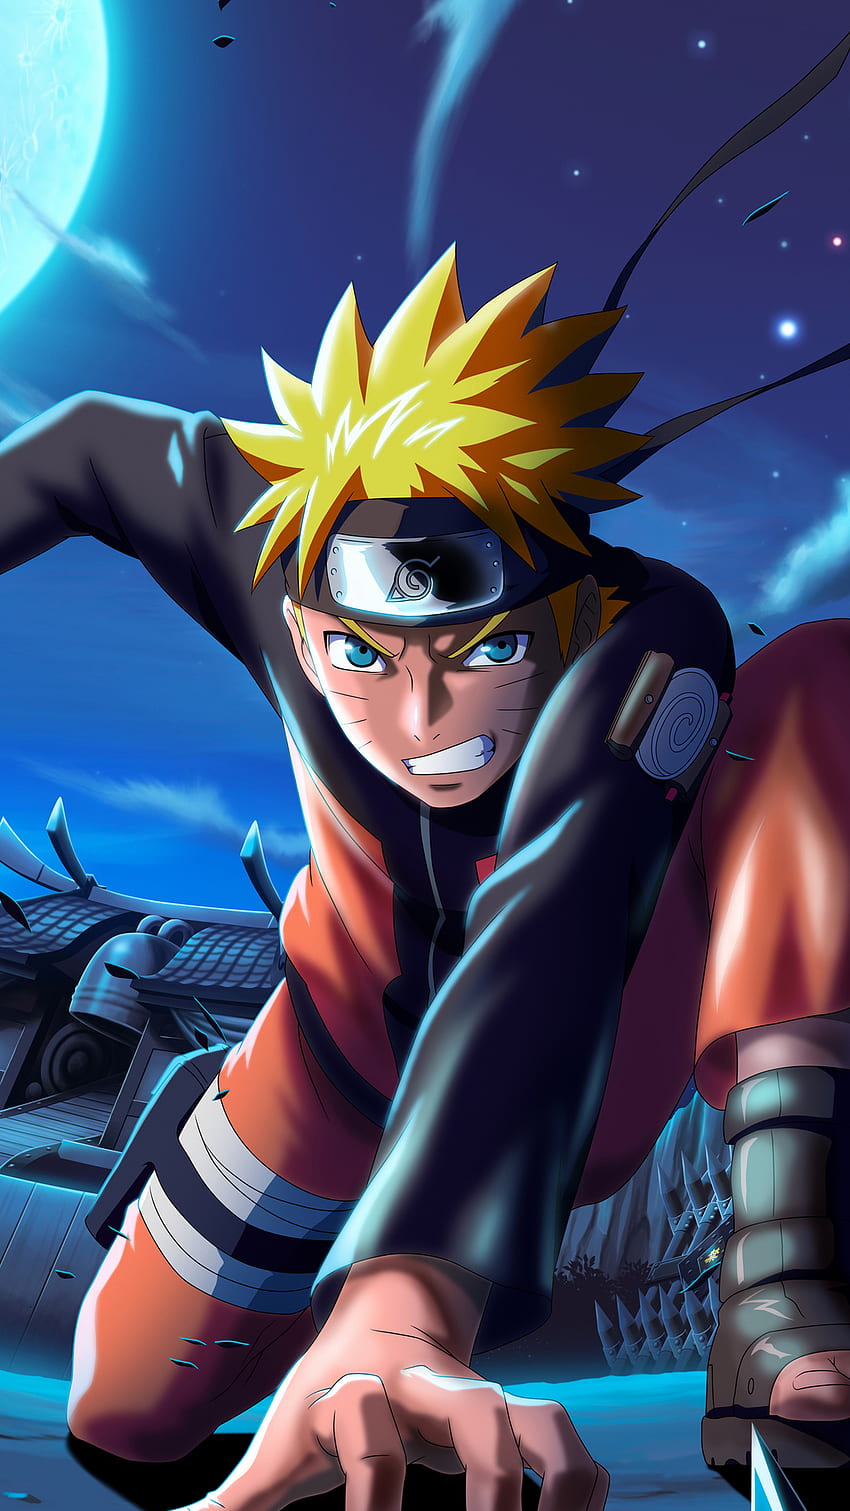 Naruto x boruto ninja voltage: game nhập vai anime Hãy cùng trải nghiệm một thế giới hoàn toàn mới với Naruto x Boruto Ninja Voltage - trò chơi nhập vai anime đầy hấp dẫn. Bạn sẽ được hóa thân thành những ninja mạnh nhất, tham gia vào các trận đánh cam go và giữ vững hòa bình cho thế giới của chúng ta. Đừng bỏ lỡ cơ hội chinh phục và trở thành nhà vô địch game này nhé!